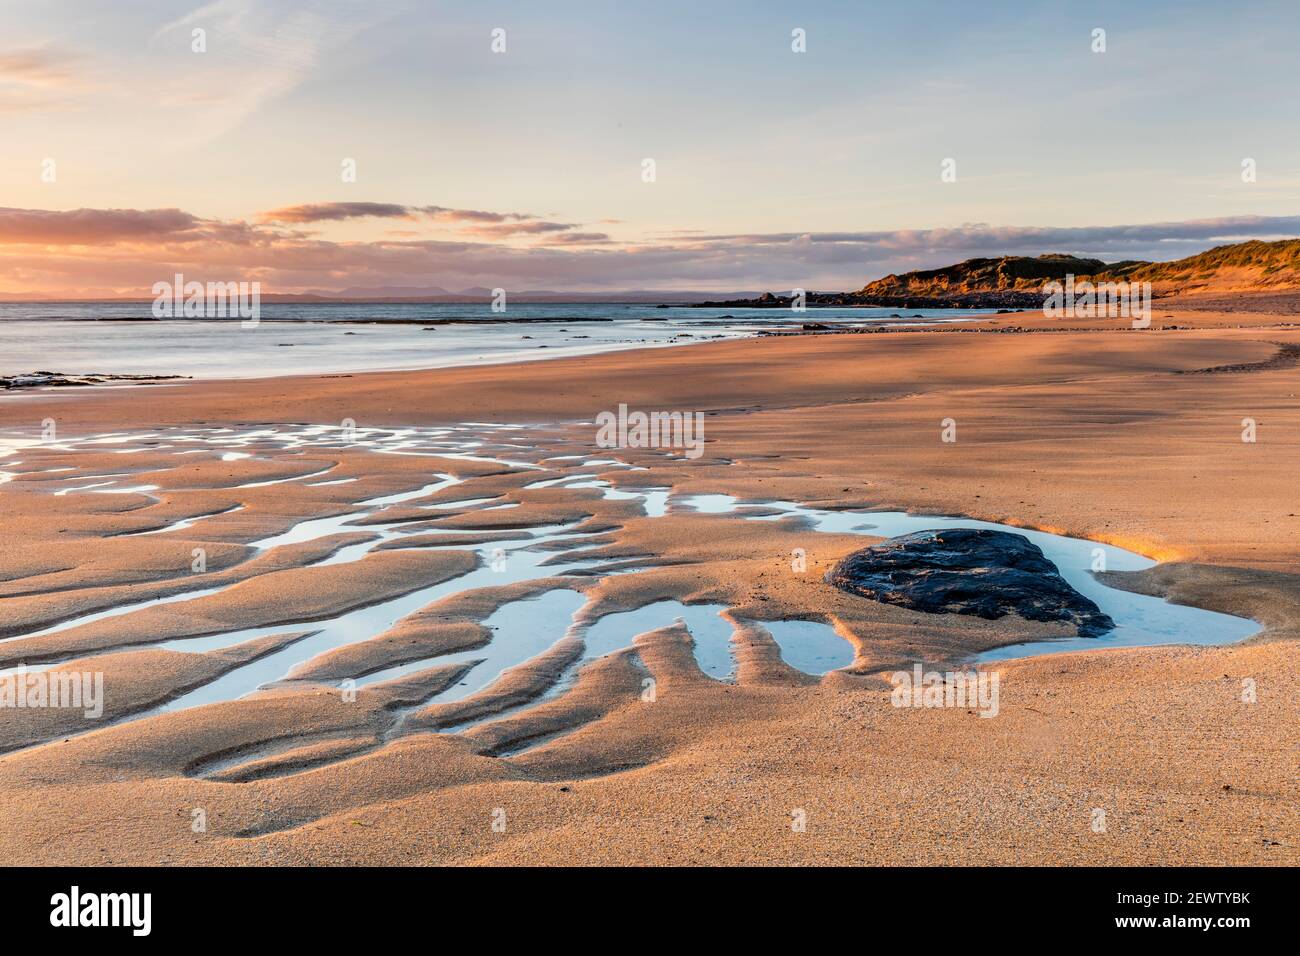 Fanore Strand an der Burren Küste, in der Grafschaft Clare, Irland. Fanore Beach, der an Irlands Westküste liegt, liegt am Wild Atlantic Way. Stockfoto